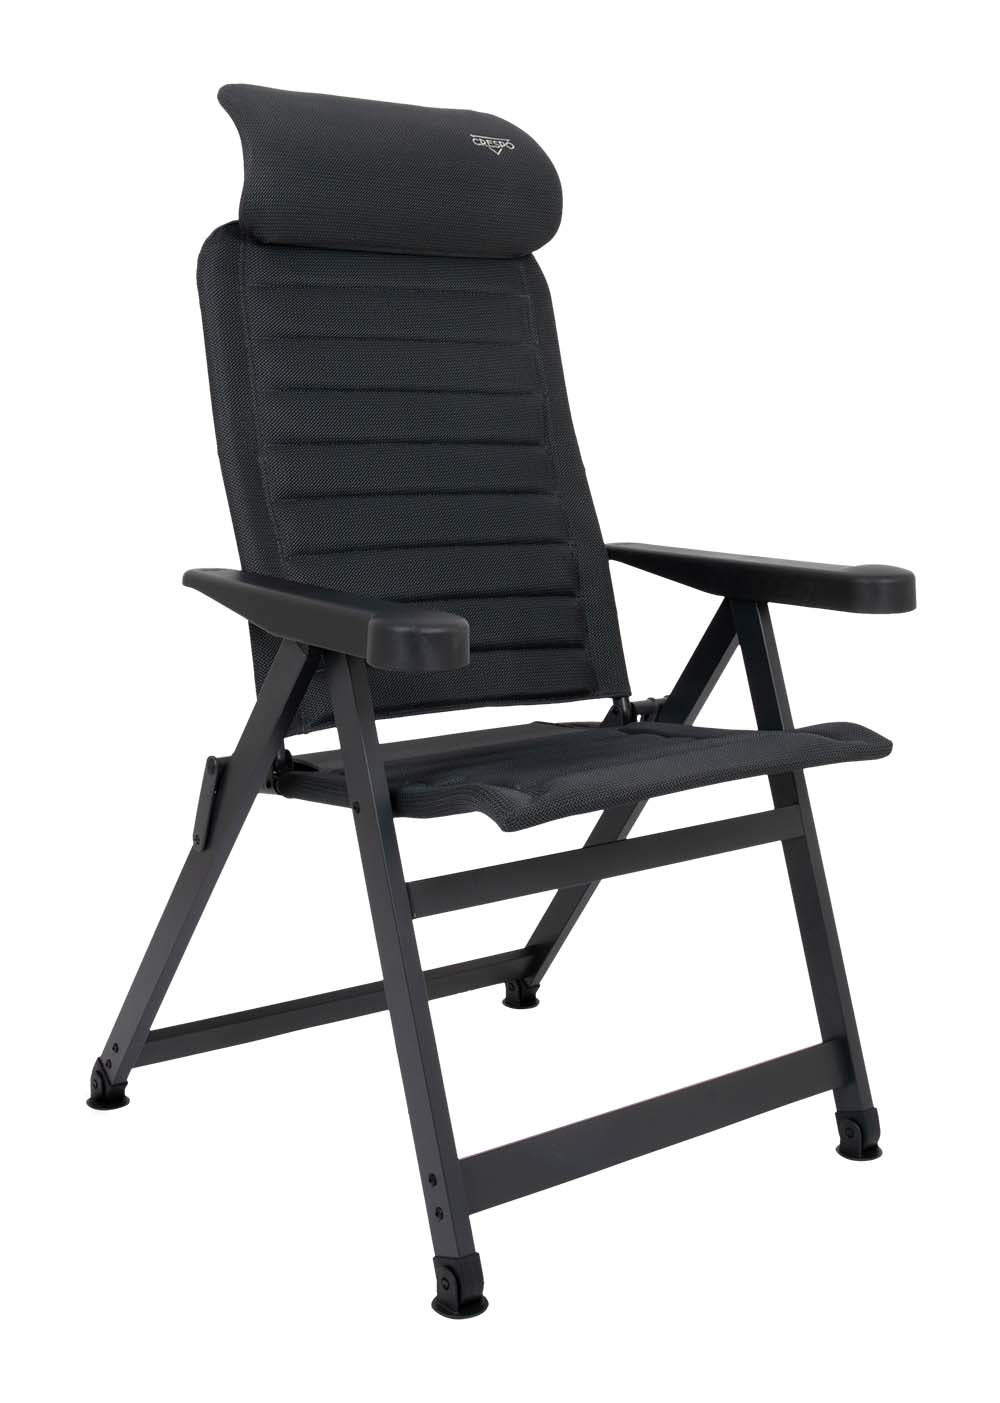 1149500 Een ergonomische in 7 standen verstelbare standenstoel. De stoel is uitgevoerd in een vierkant frame en voorzien van stabilisatievoeten waardoor de stoel altijd zeer stevig staat. Daarnaast is de stoel voorzien van een verstelbare hoofdsteun. De zeer comfortabele en chique stoffering is extra luchtdoorlatend en houdt door de open celstructuur geen vocht vast. Hierdoor is de stoel veel sneller droog dan stoelen met een traditionele schuimvulling. Deze stoel heeft een lagere zit en een kortere rugleuning. Hierdoor is deze stoel uitermate geschikt voor mensen met kortere benen. Biedt maximaal comfort door de in 7 standen verstelbare rugleuning. Zowel de rugleuning als de armleggers zijn ergonomisch gevormd. De stoel is voorzien van een geanodiseerd H-frame voor extra stabiliteit en stevigheid. Door zijn unieke ontwerp en de lagere zit is deze stoel zeer compact en gemakkelijk mee te nemen.